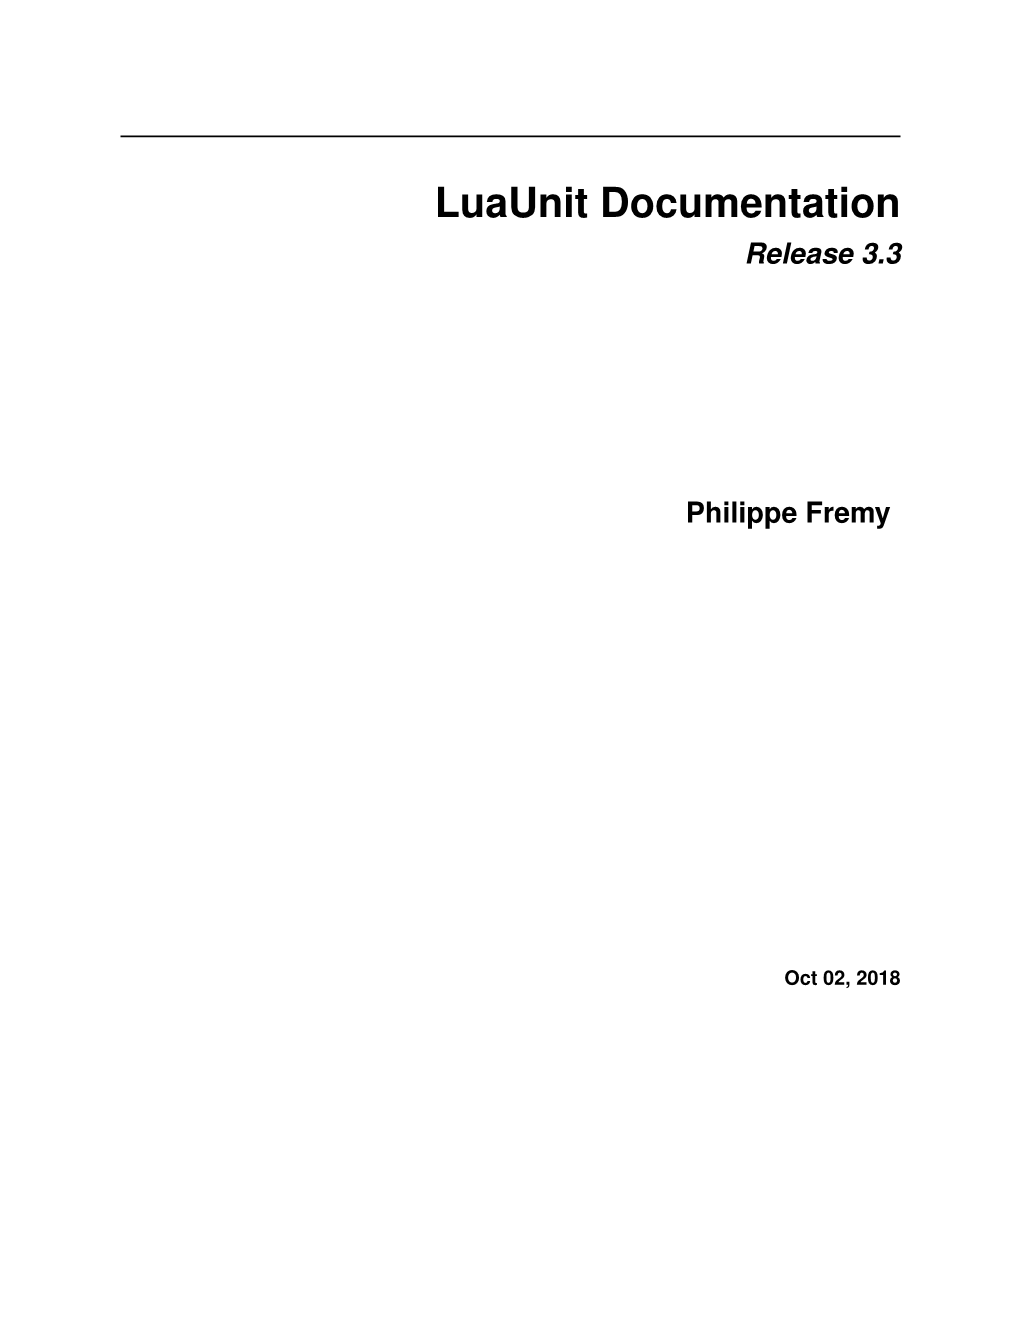 Luaunit Documentation Release 3.3